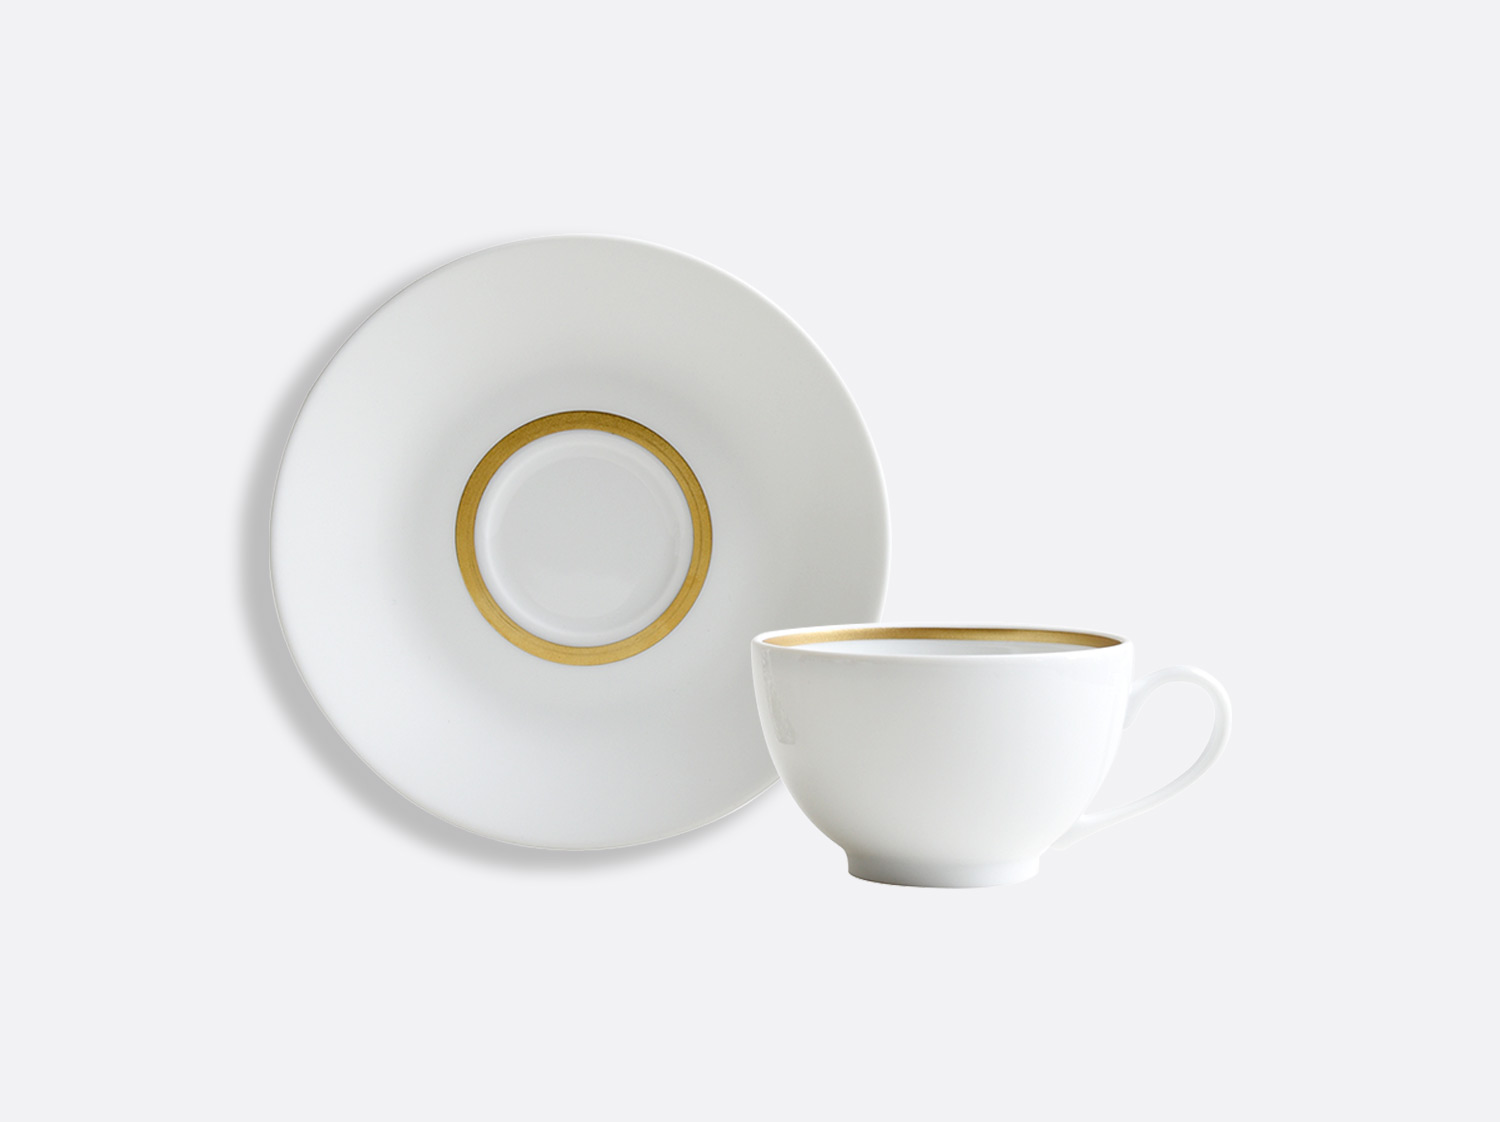 China Teacup and saucer 4.5 oz of the collection Cronos or | Bernardaud